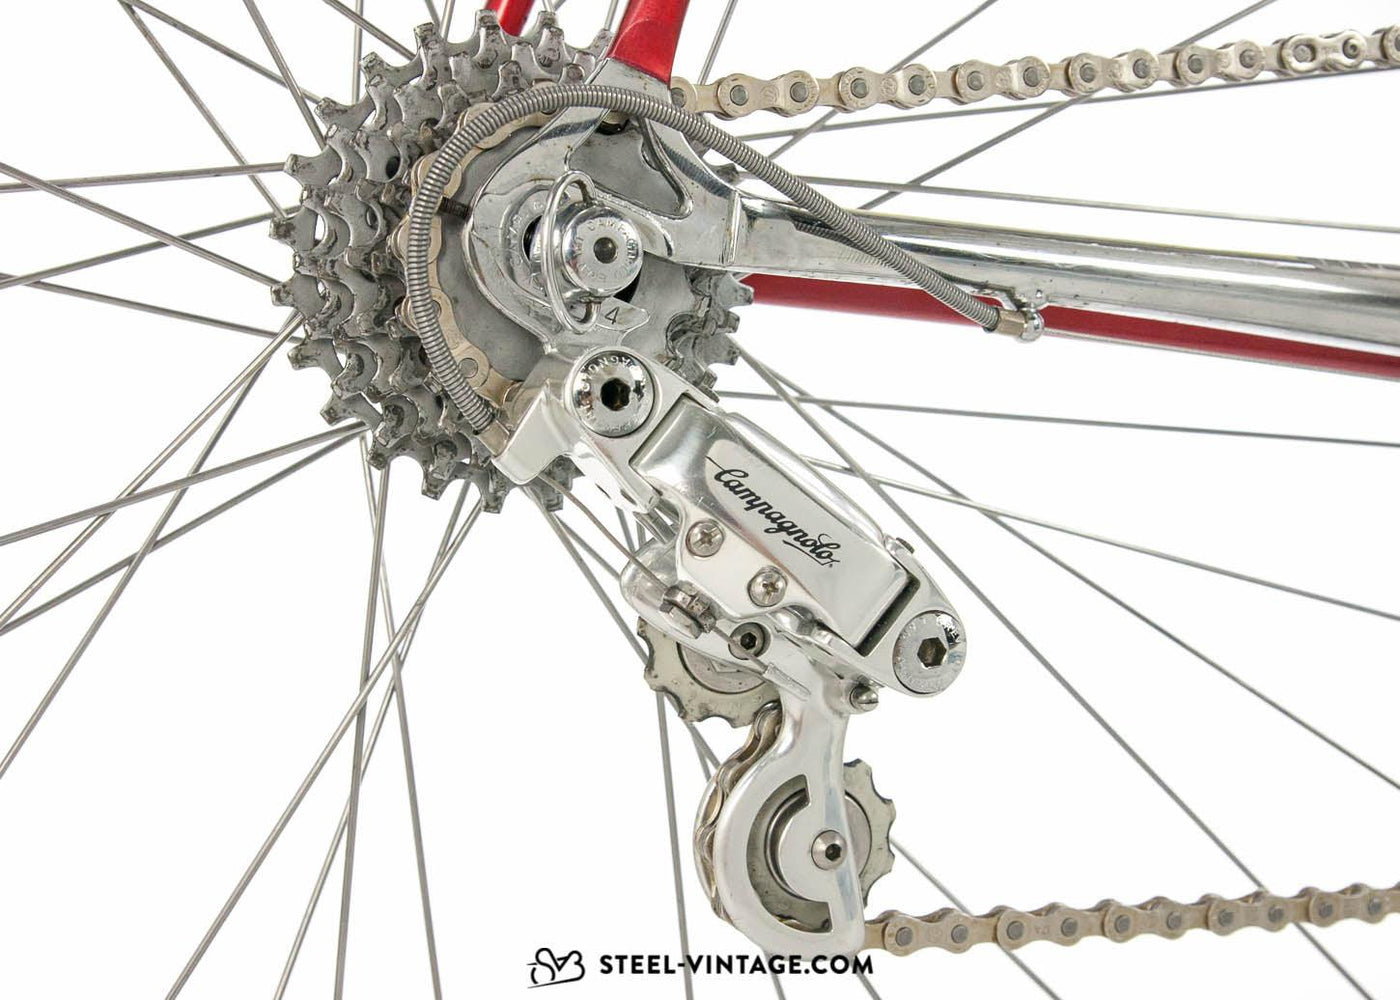 Colnago Master Più Vintage Racing Bicycle - Steel Vintage Bikes